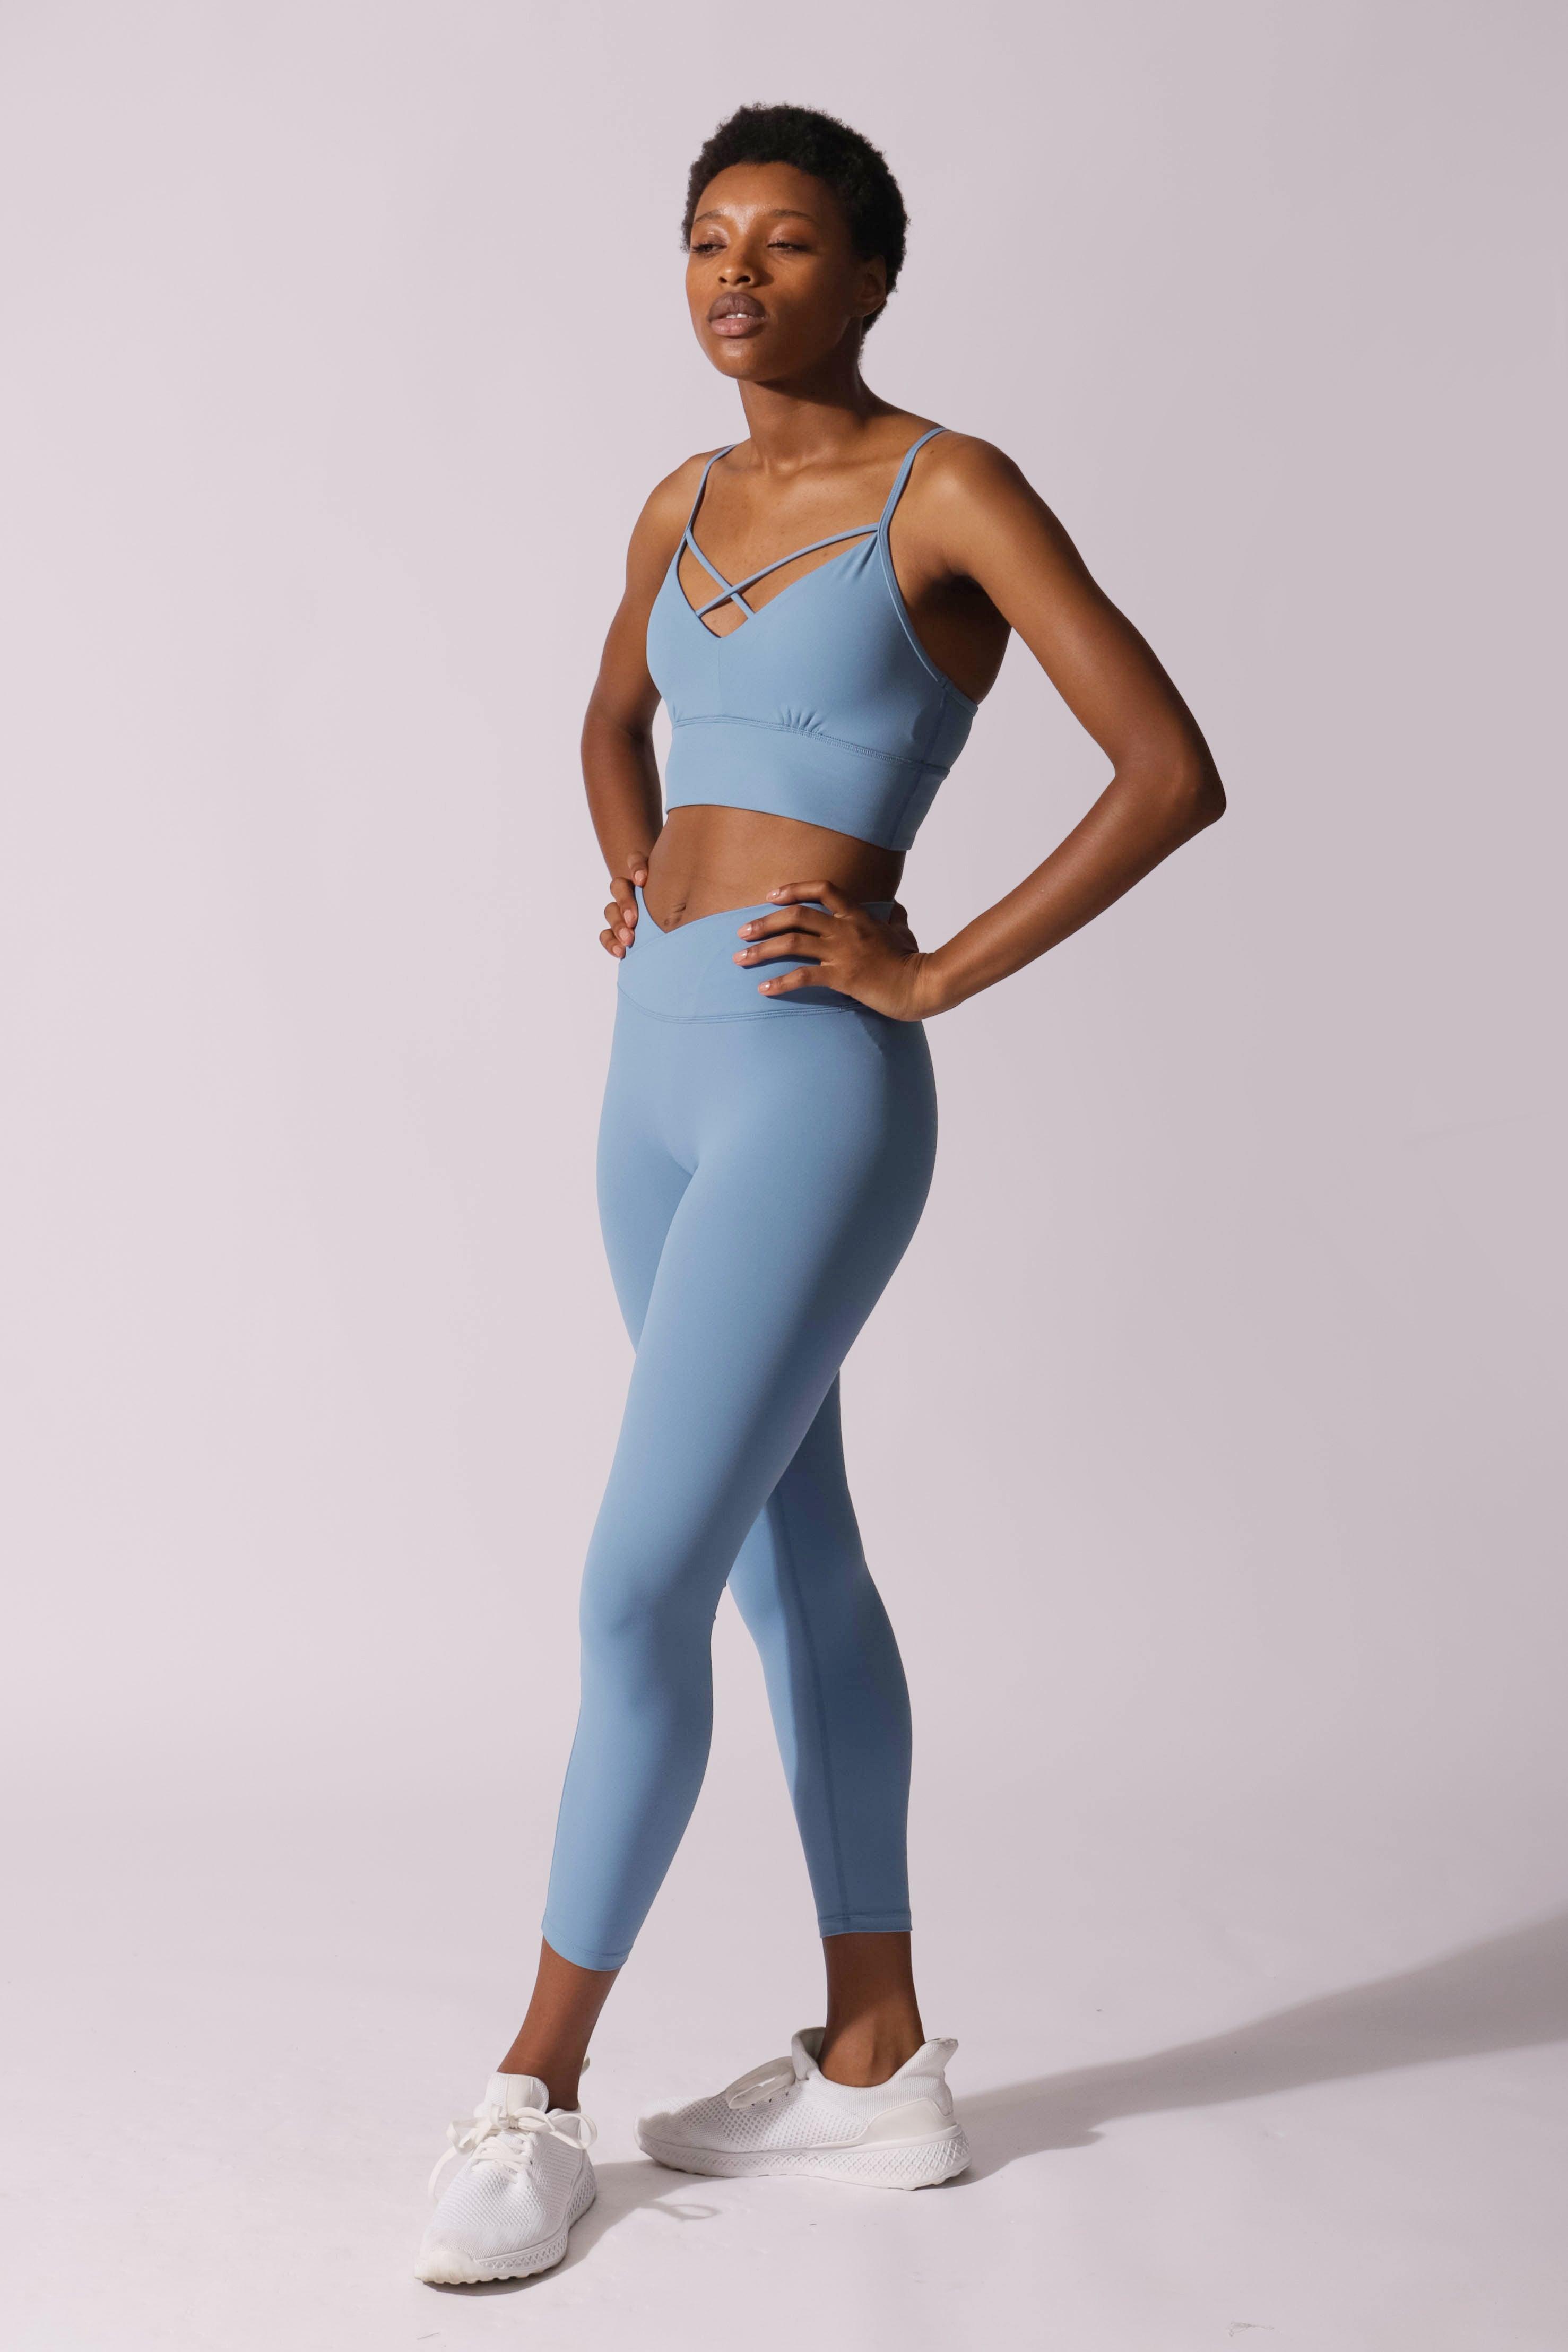 UUE 26Inseam Blue Yoga pants,Womens gym leggings,seemless leggings with  inner Pocket for women